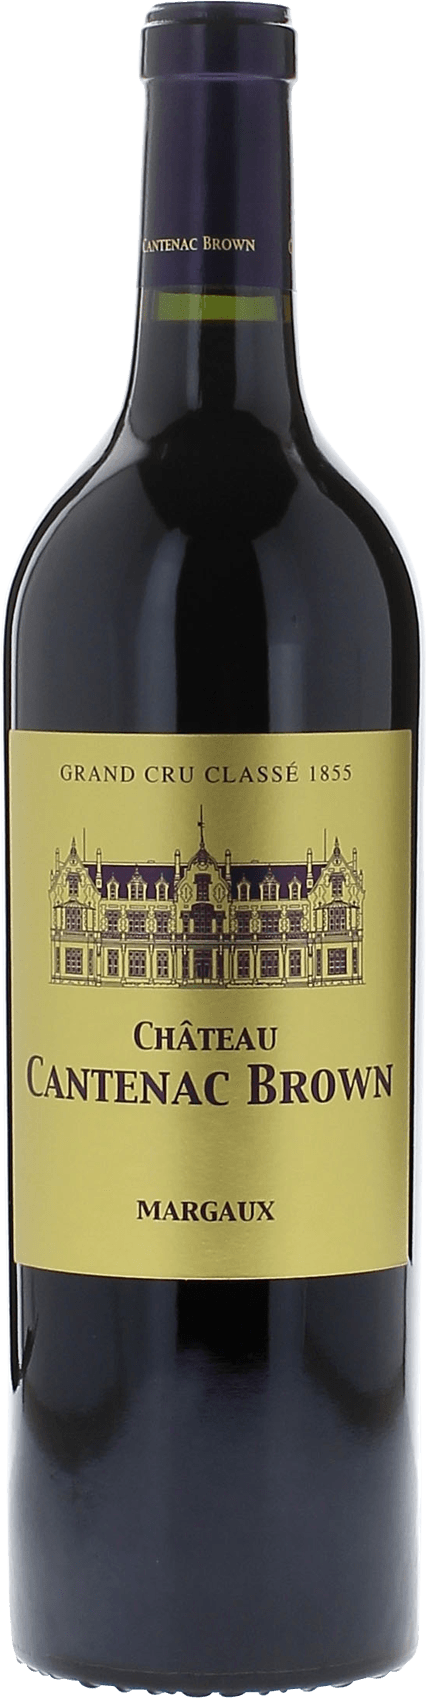 Cantenac brown 1990 2me Grand cru class Margaux, Bordeaux rouge